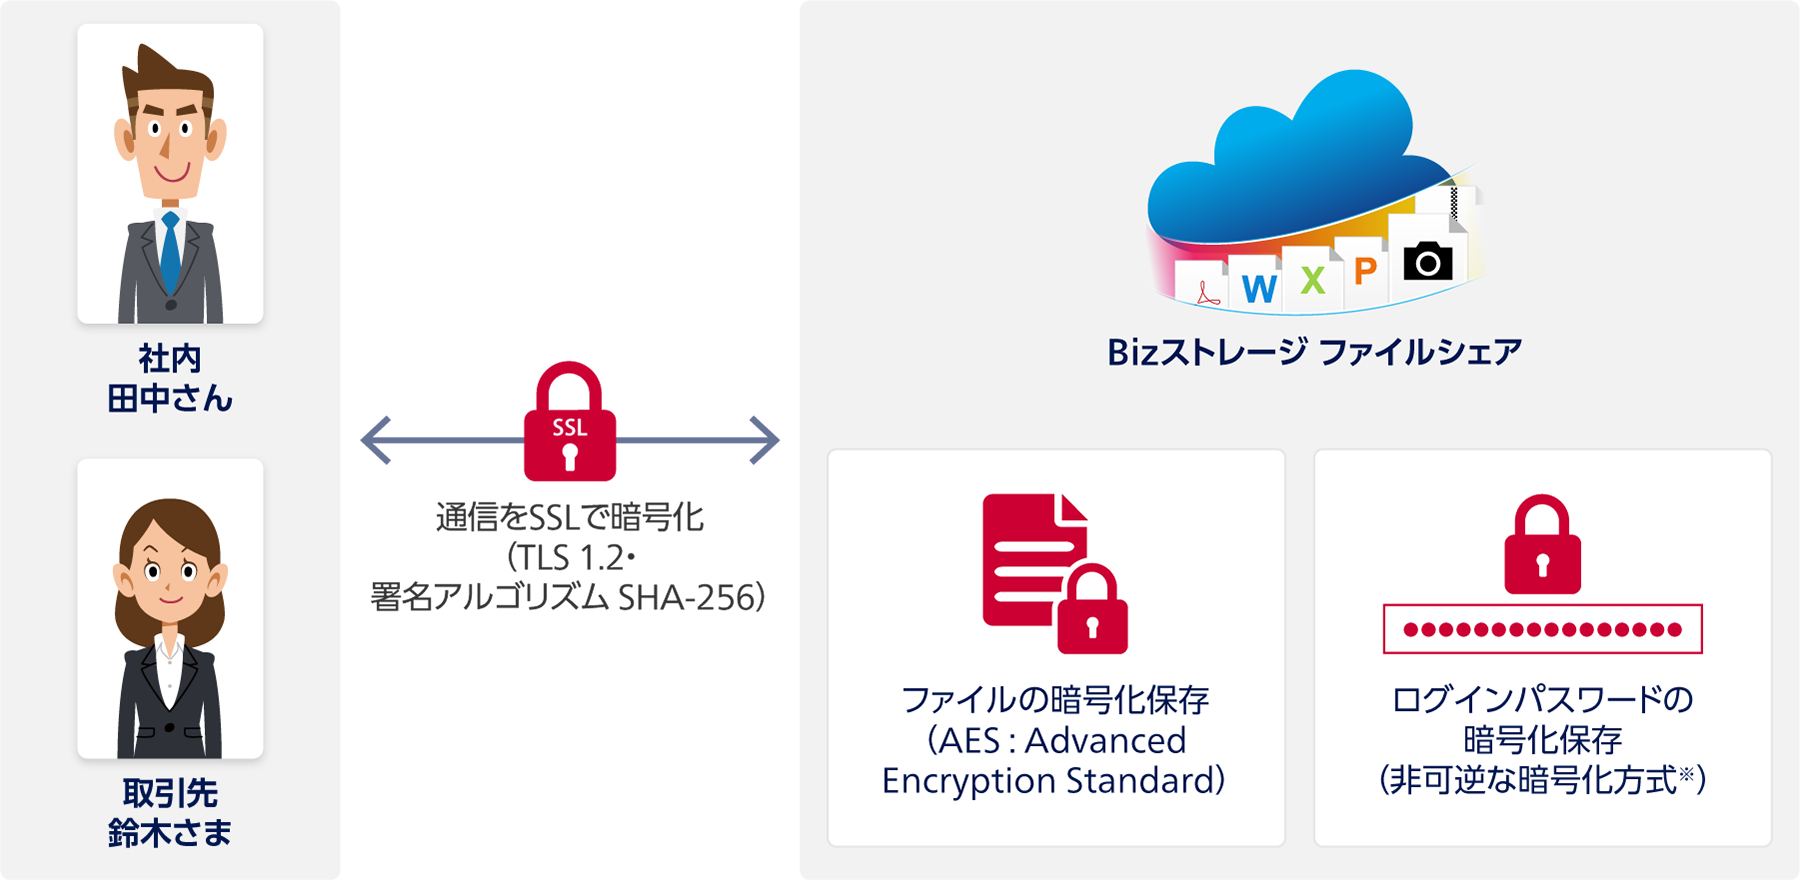 社内 田中さん・取引先 鈴木さまとBizストレージ ファイルシェアの間：通信をSSLで暗号化（TLS 1.2・署名アルゴリズム SHA-256）。Bizストレージ ファイルシェア：ファイルの暗号化保存（AES : Advanced Encryption Standard）、ログインパスワードの暗号化保存（非可逆な暗号化方式※）。